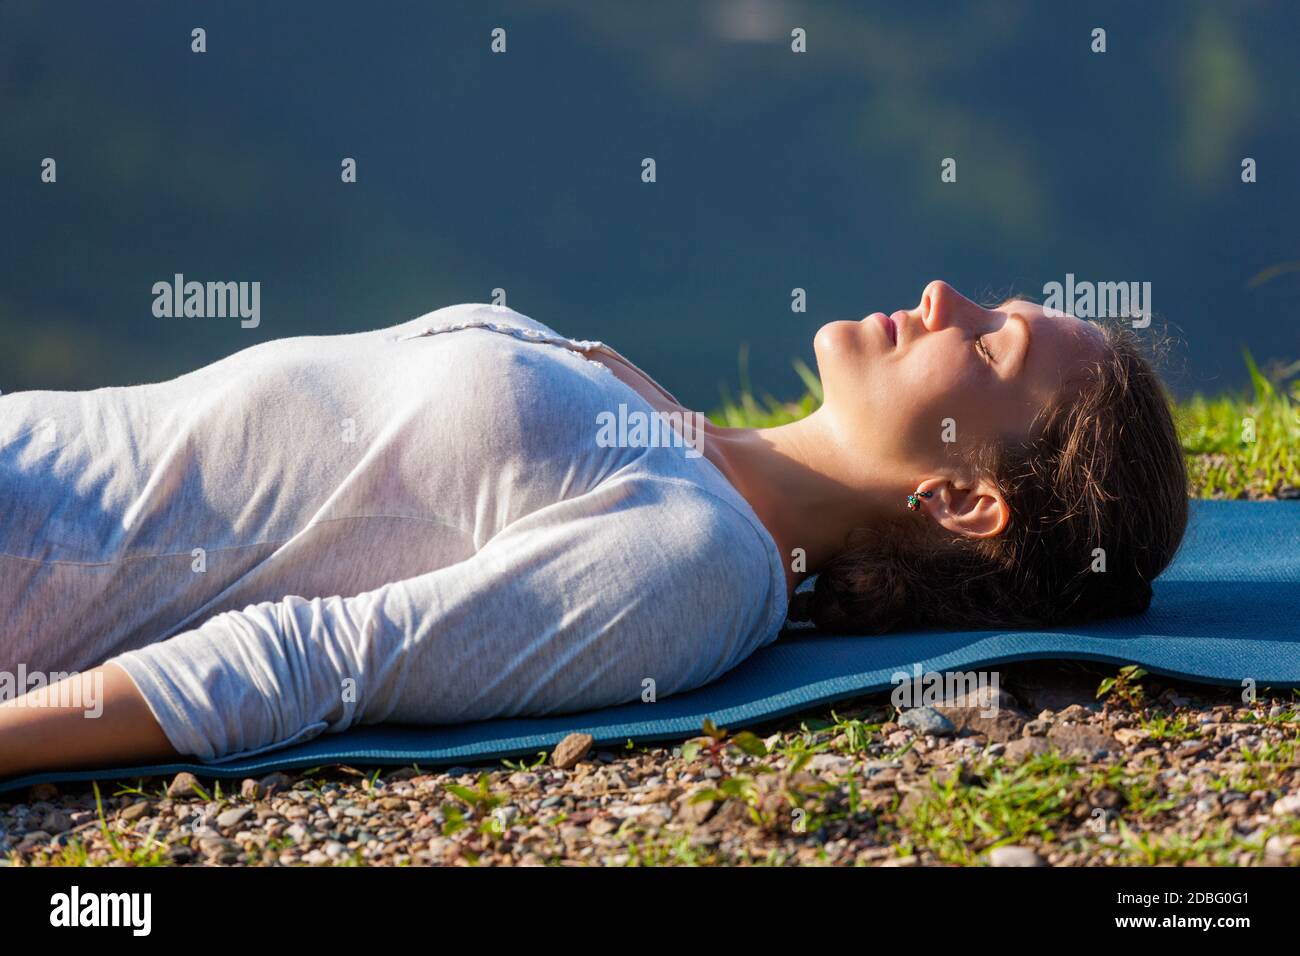 Une femme se détend en yoga relaxation asana Savasana - cadavre pose à l'extérieur dans l'Himalaya. Himachal Pradesh, Inde Banque D'Images